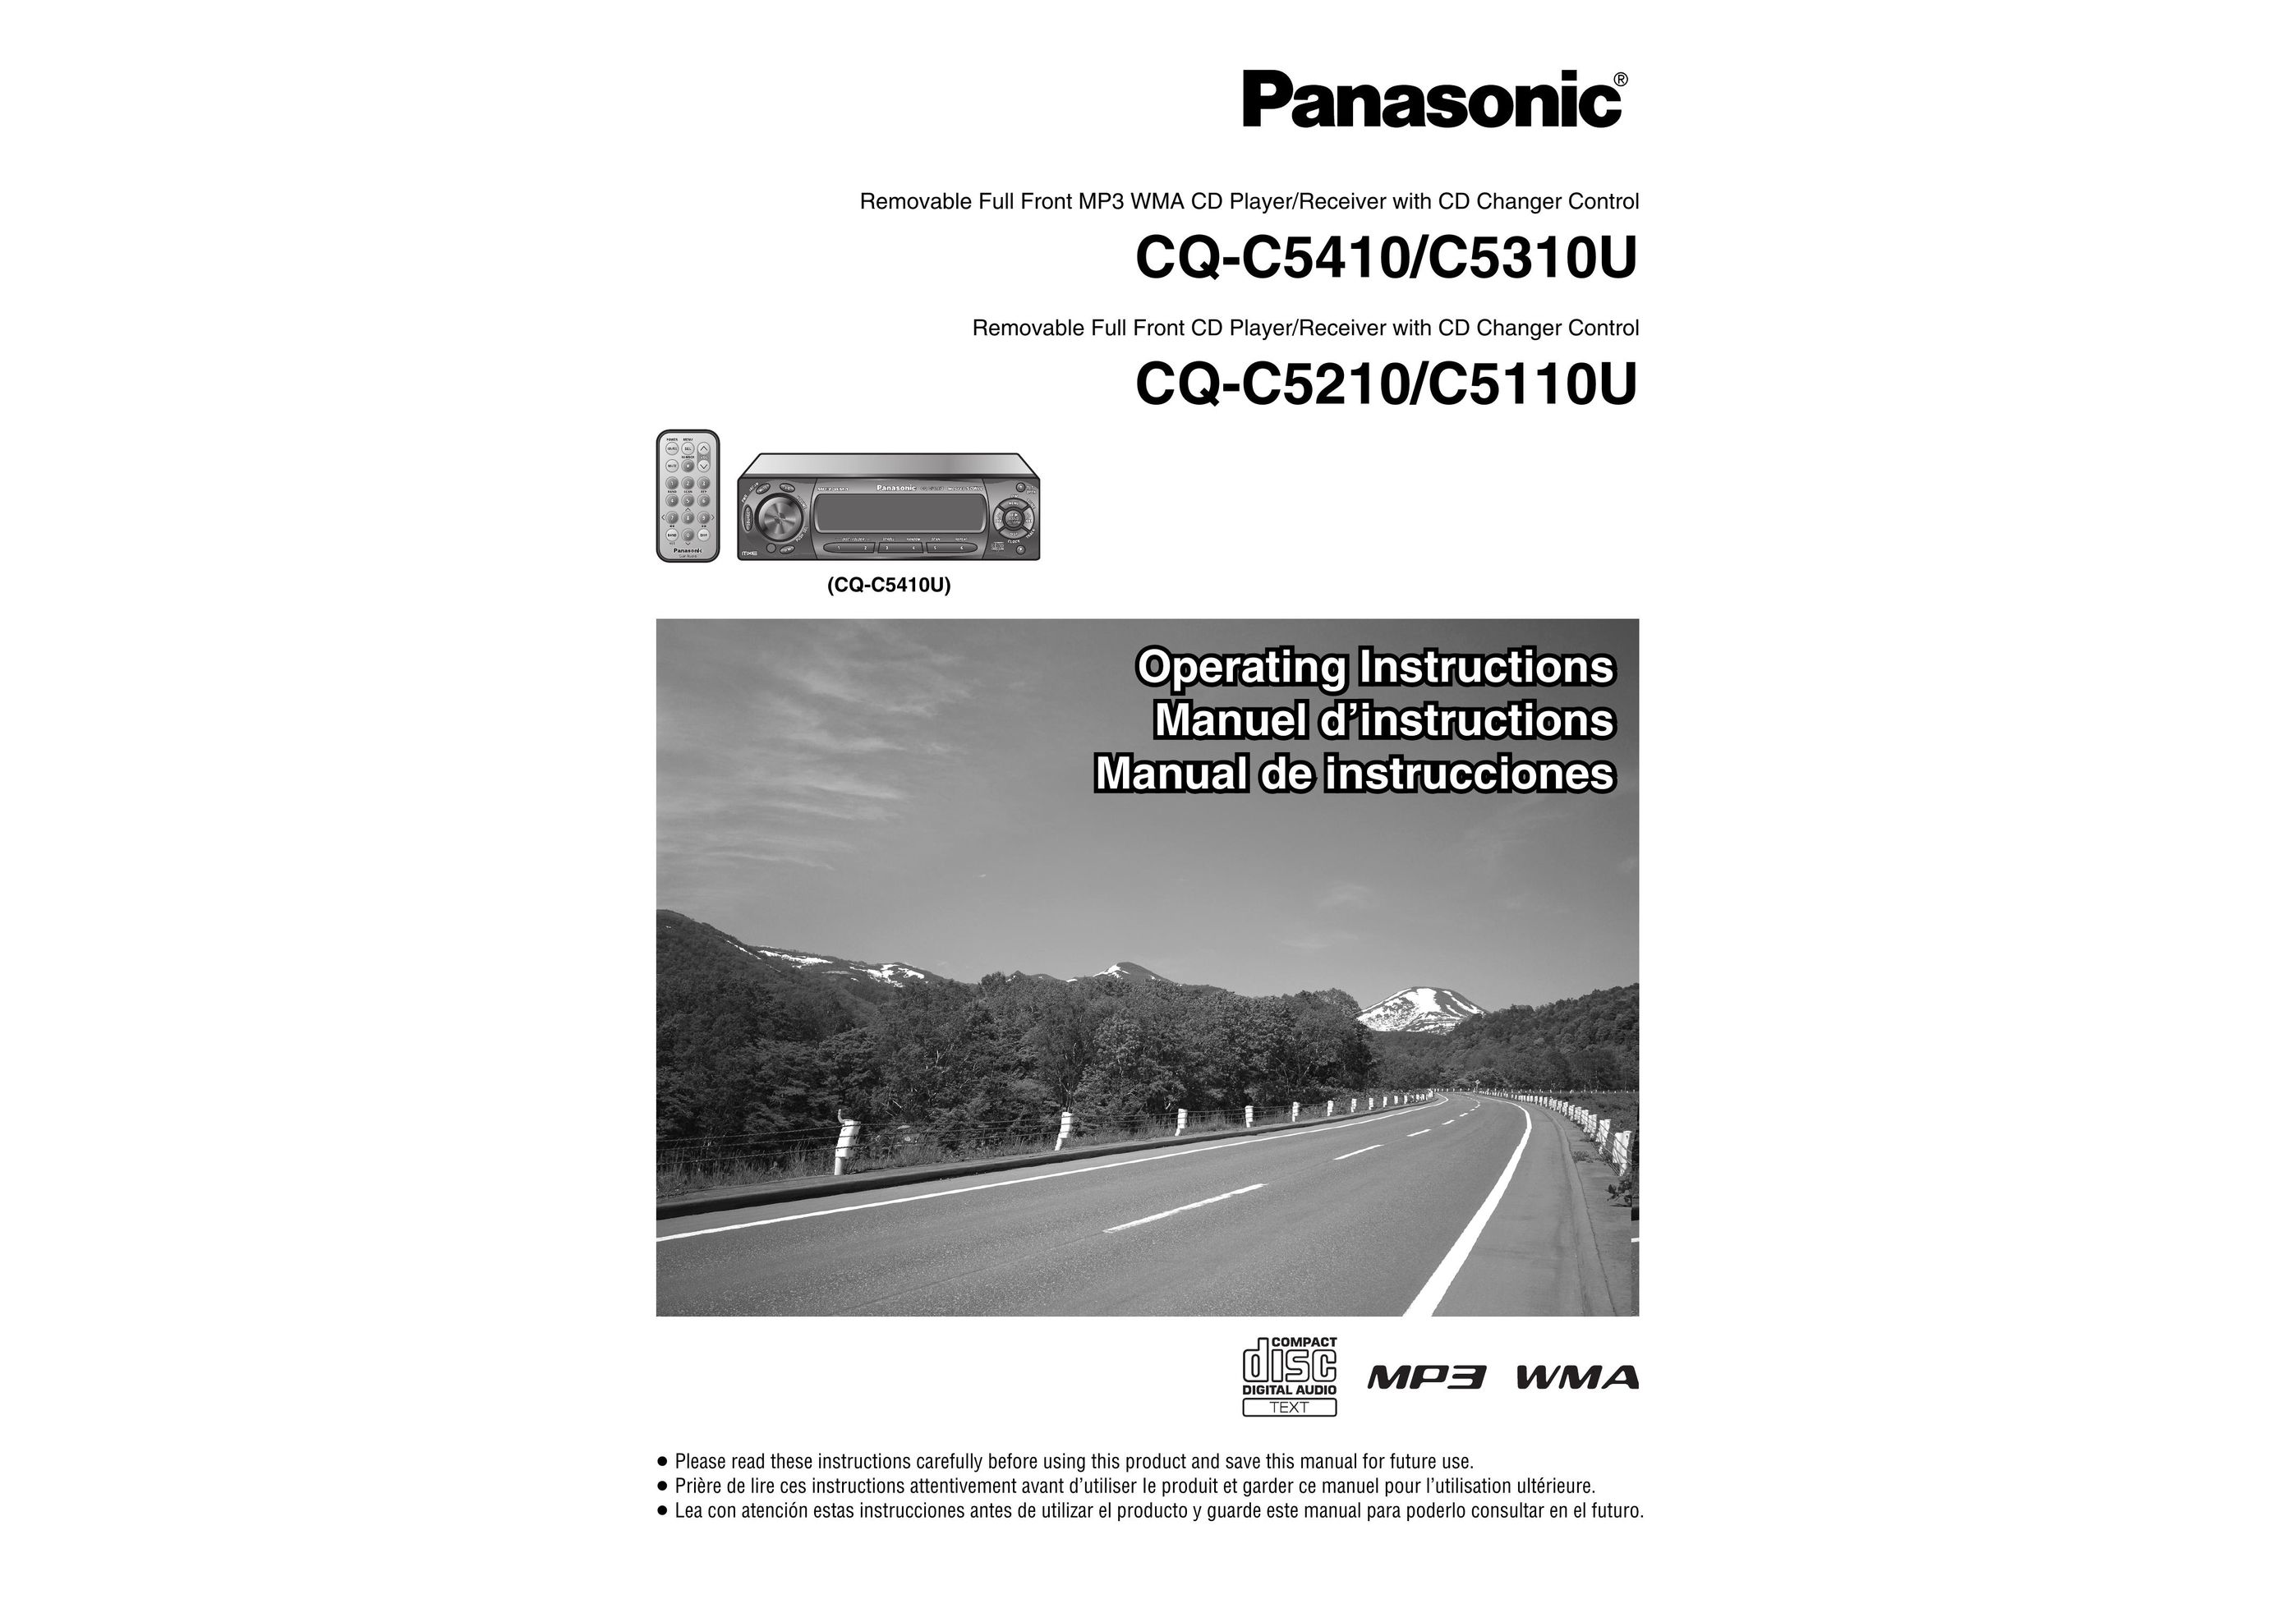 Panasonic C5310U CD Player User Manual